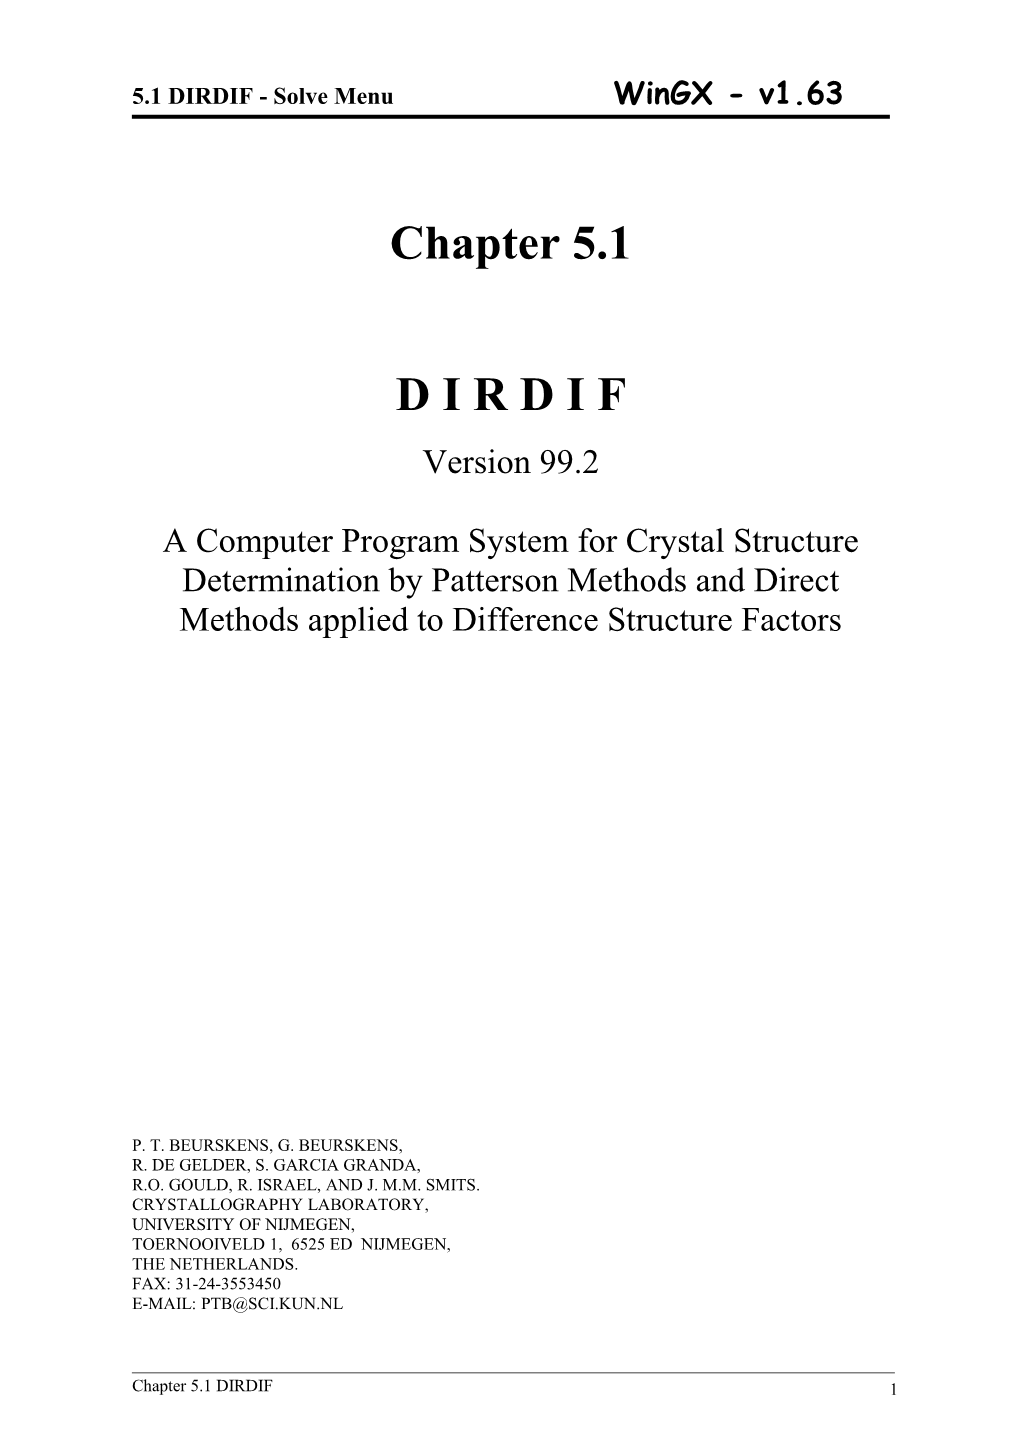 5.1 DIRDIF - Solve Menu Wingx - V1.63